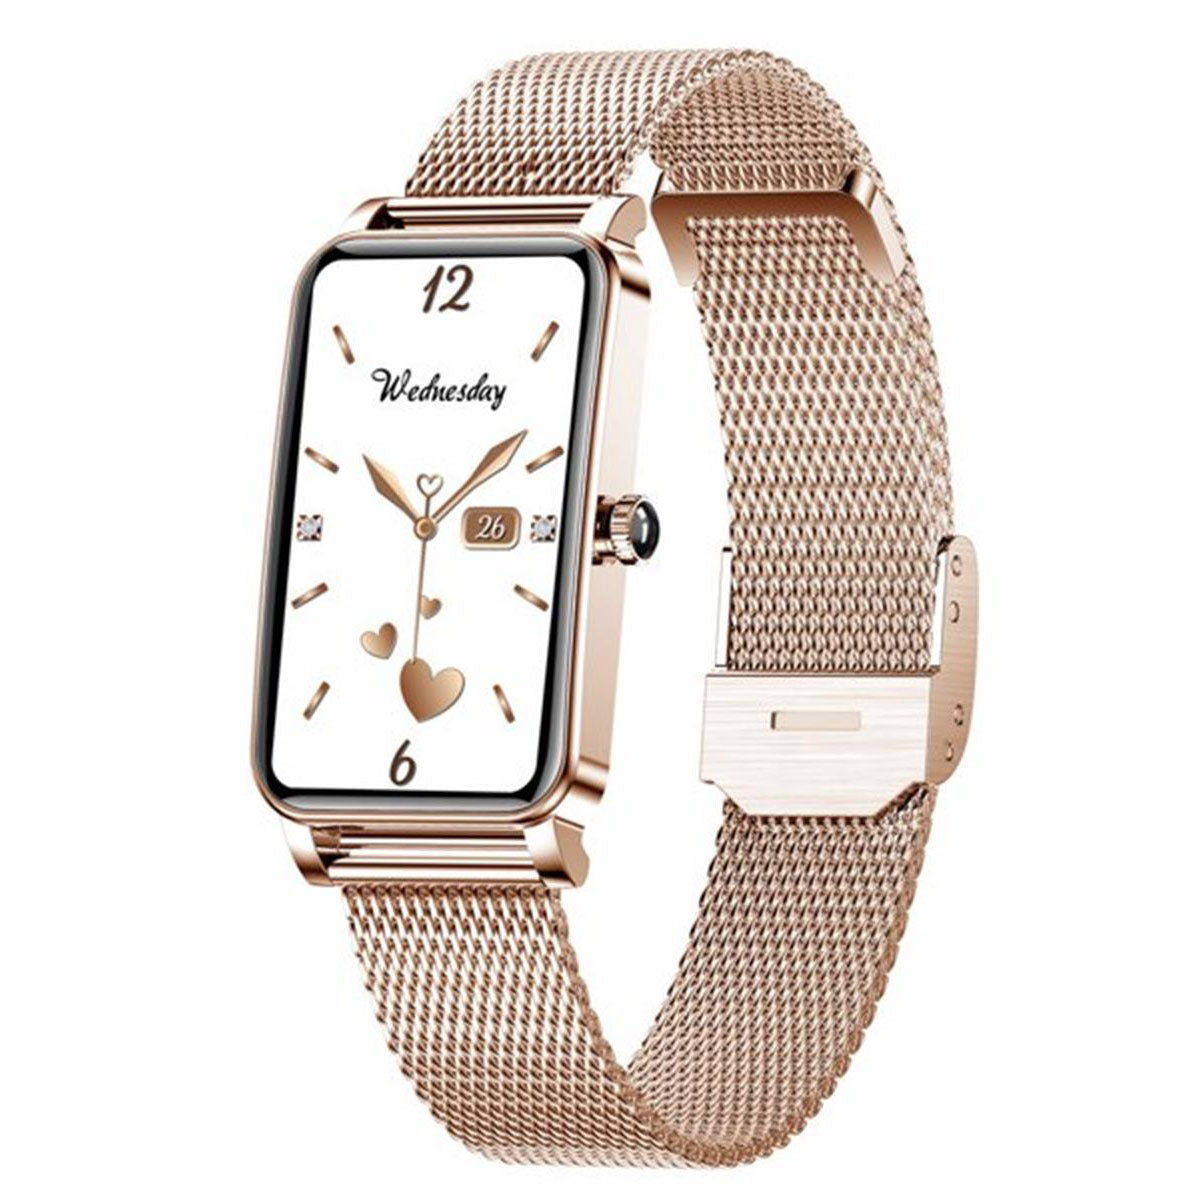 Reloj Inteligente Smart watch Fralugio Zx19 Dorado Notificaciones de Redes Sociales